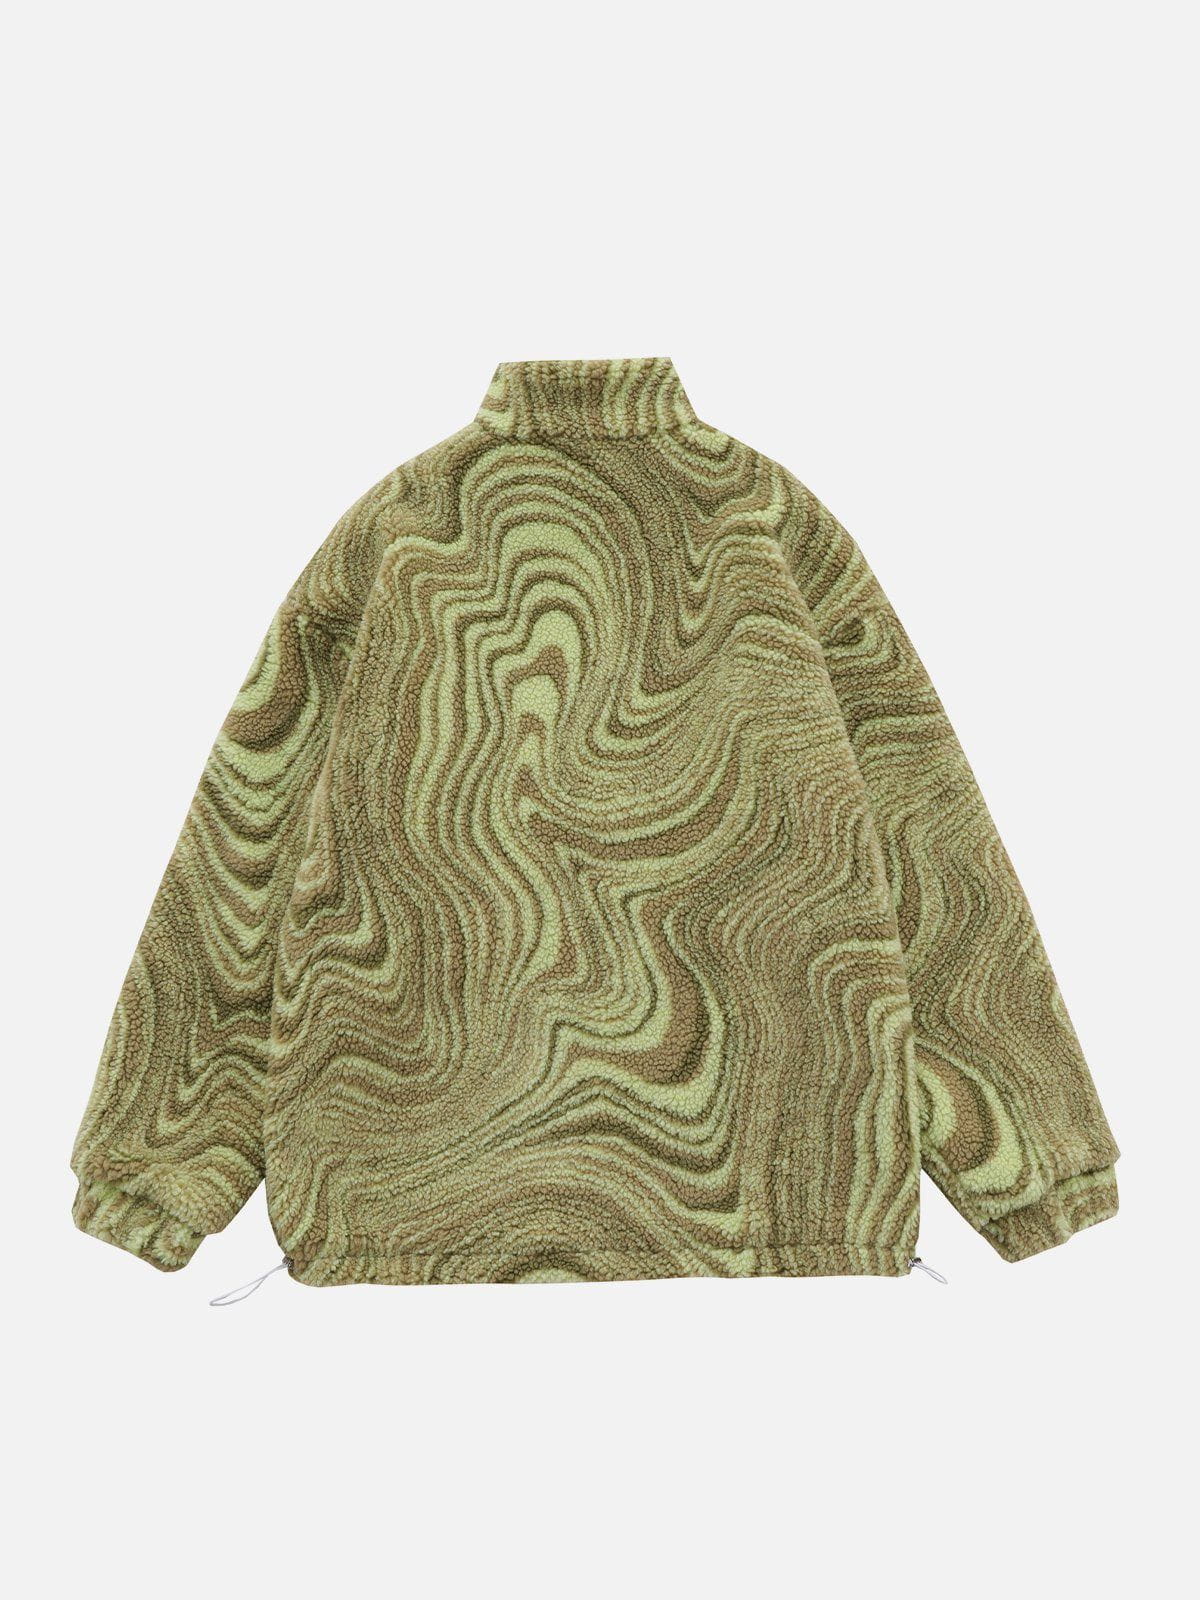 LUXENFY™ - Tie-dye Sherpa Coat luxenfy.com